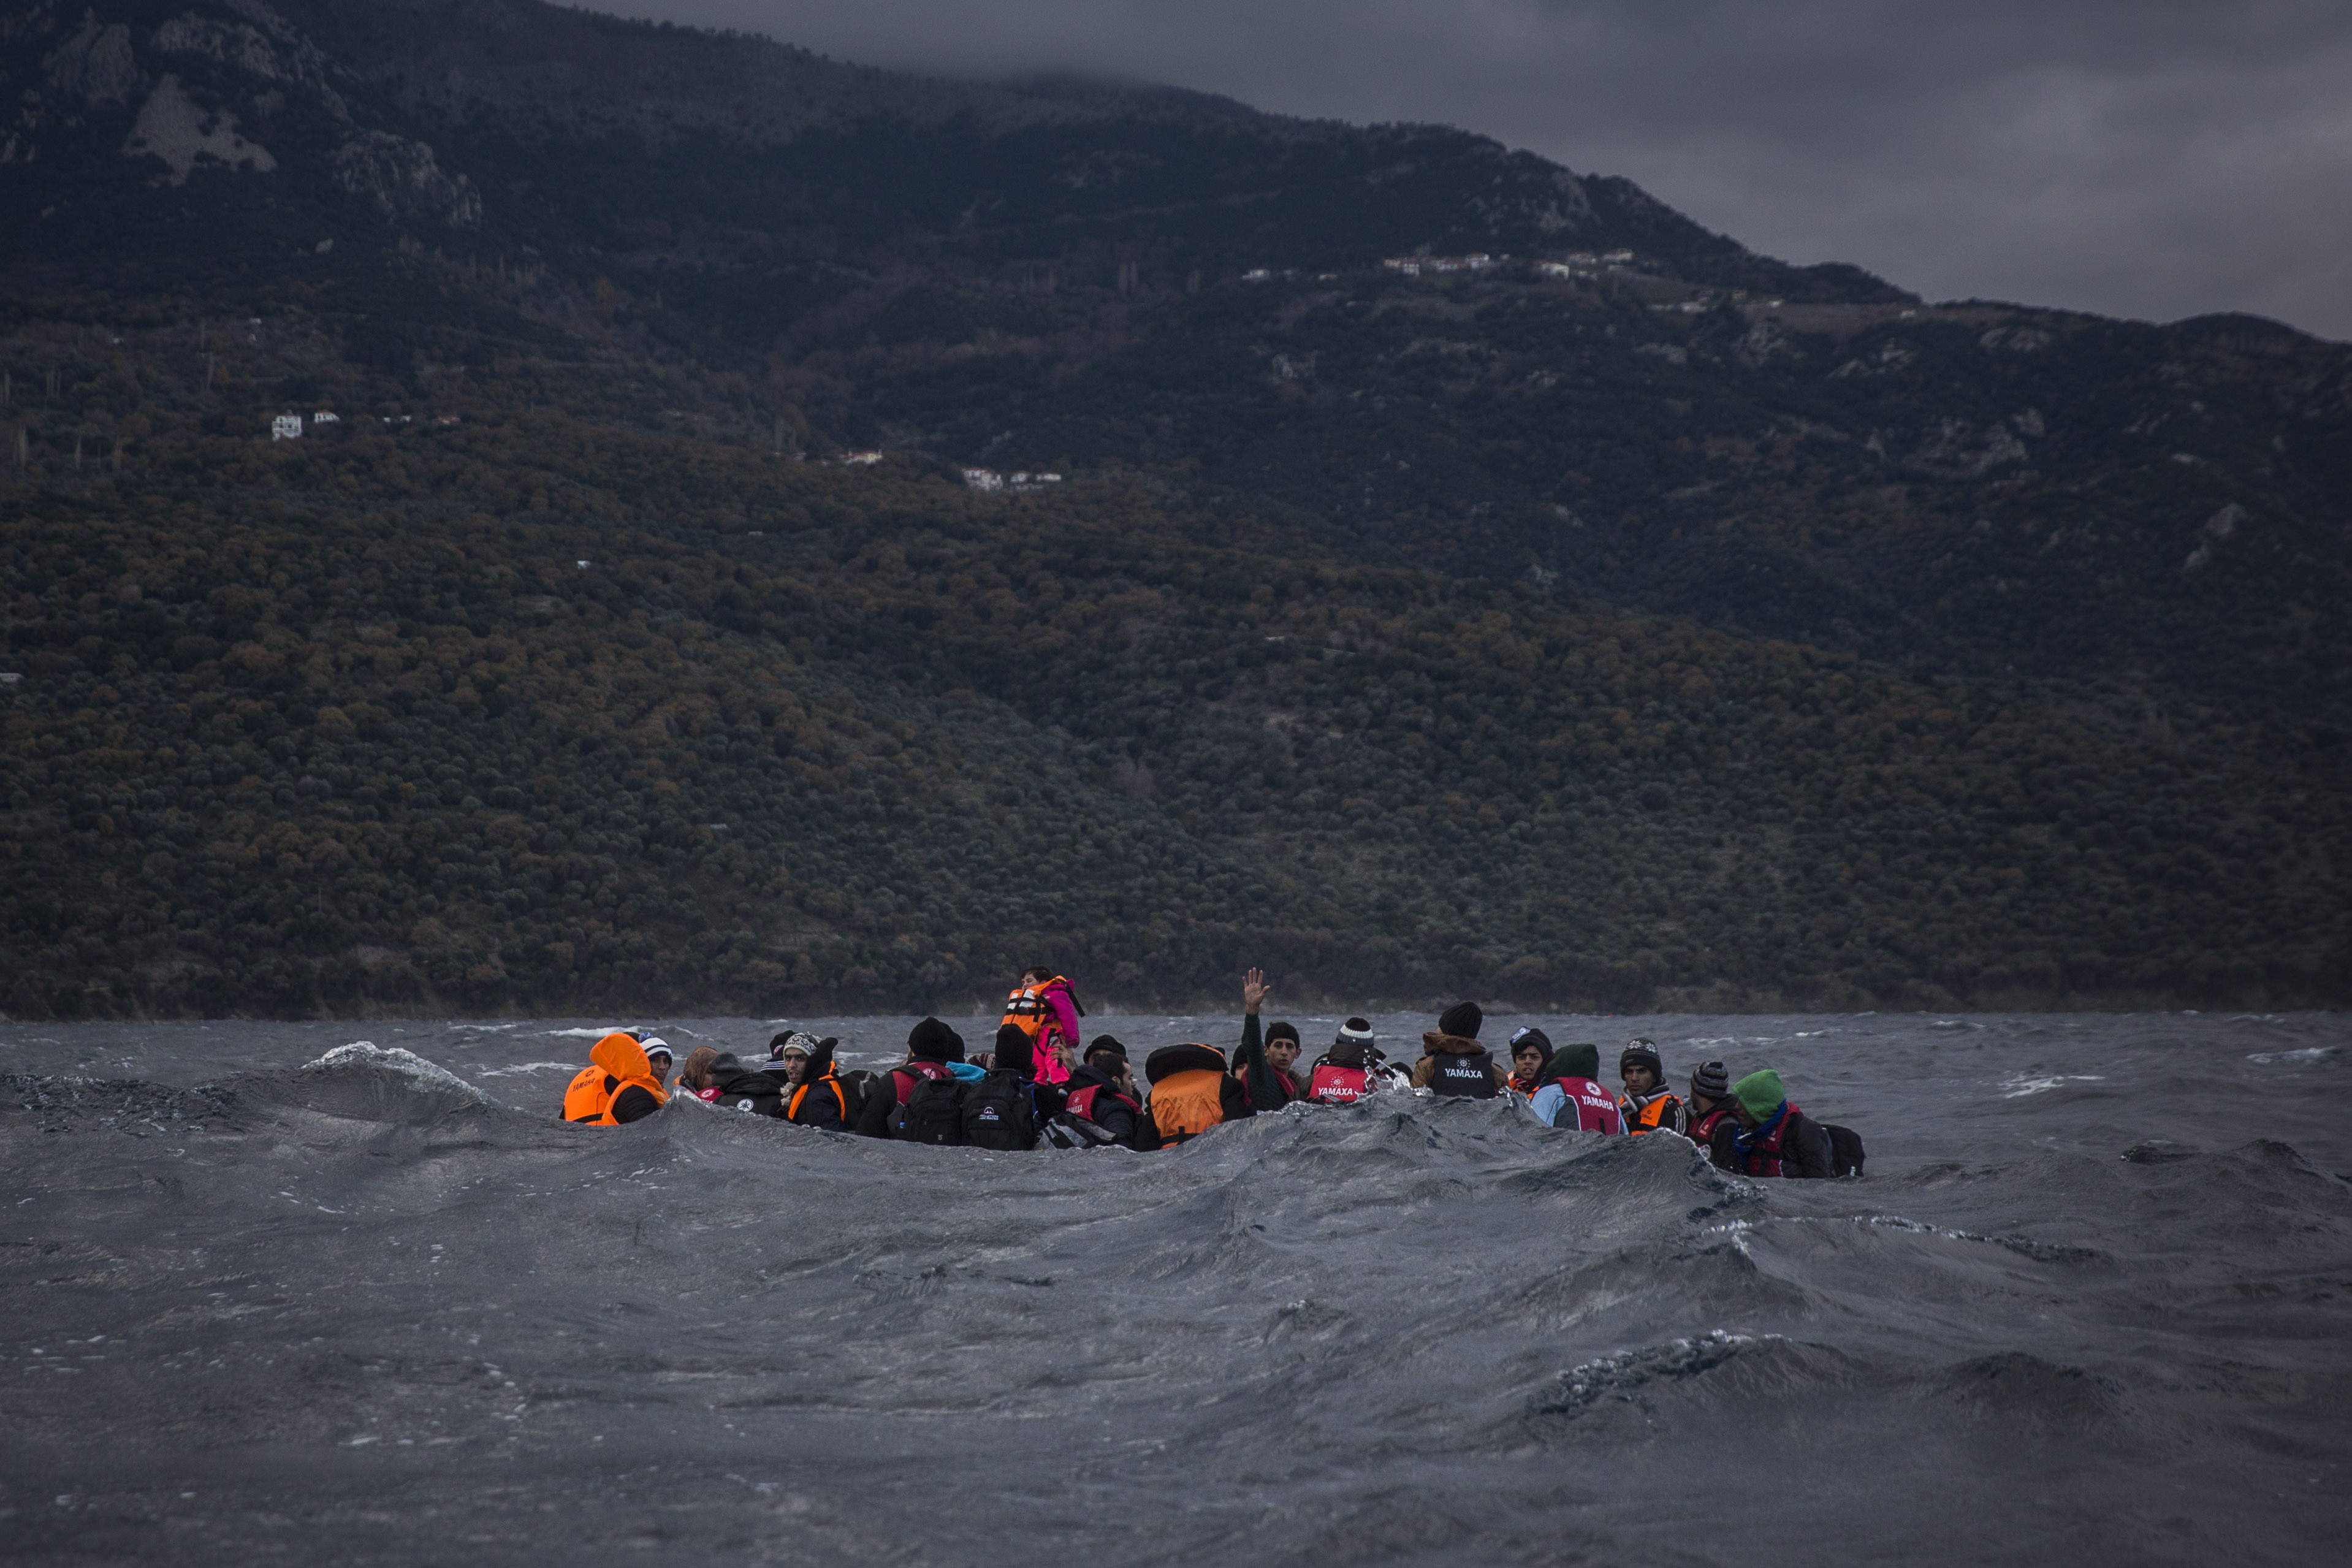 Σχεδόν στο μισό μειώθηκαν οι αφίξεις προσφύγων στην Ευρώπη